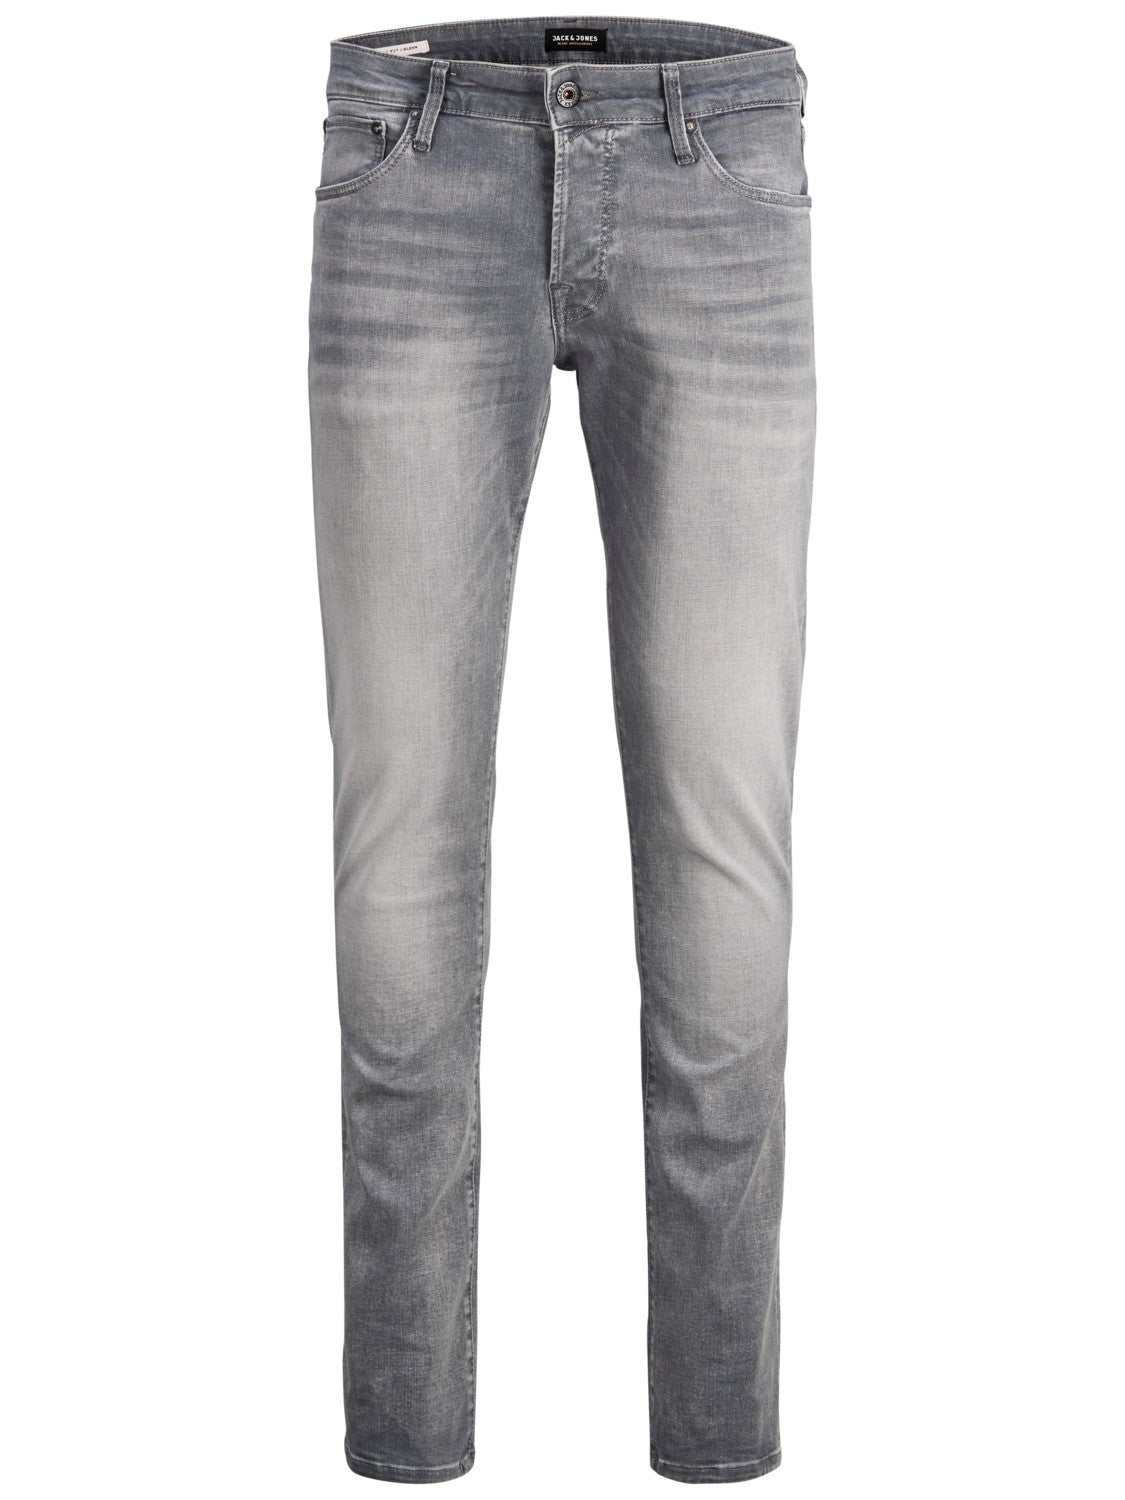 Glenn 257 Grey Slim Fit Jeans - Spirit Clothing